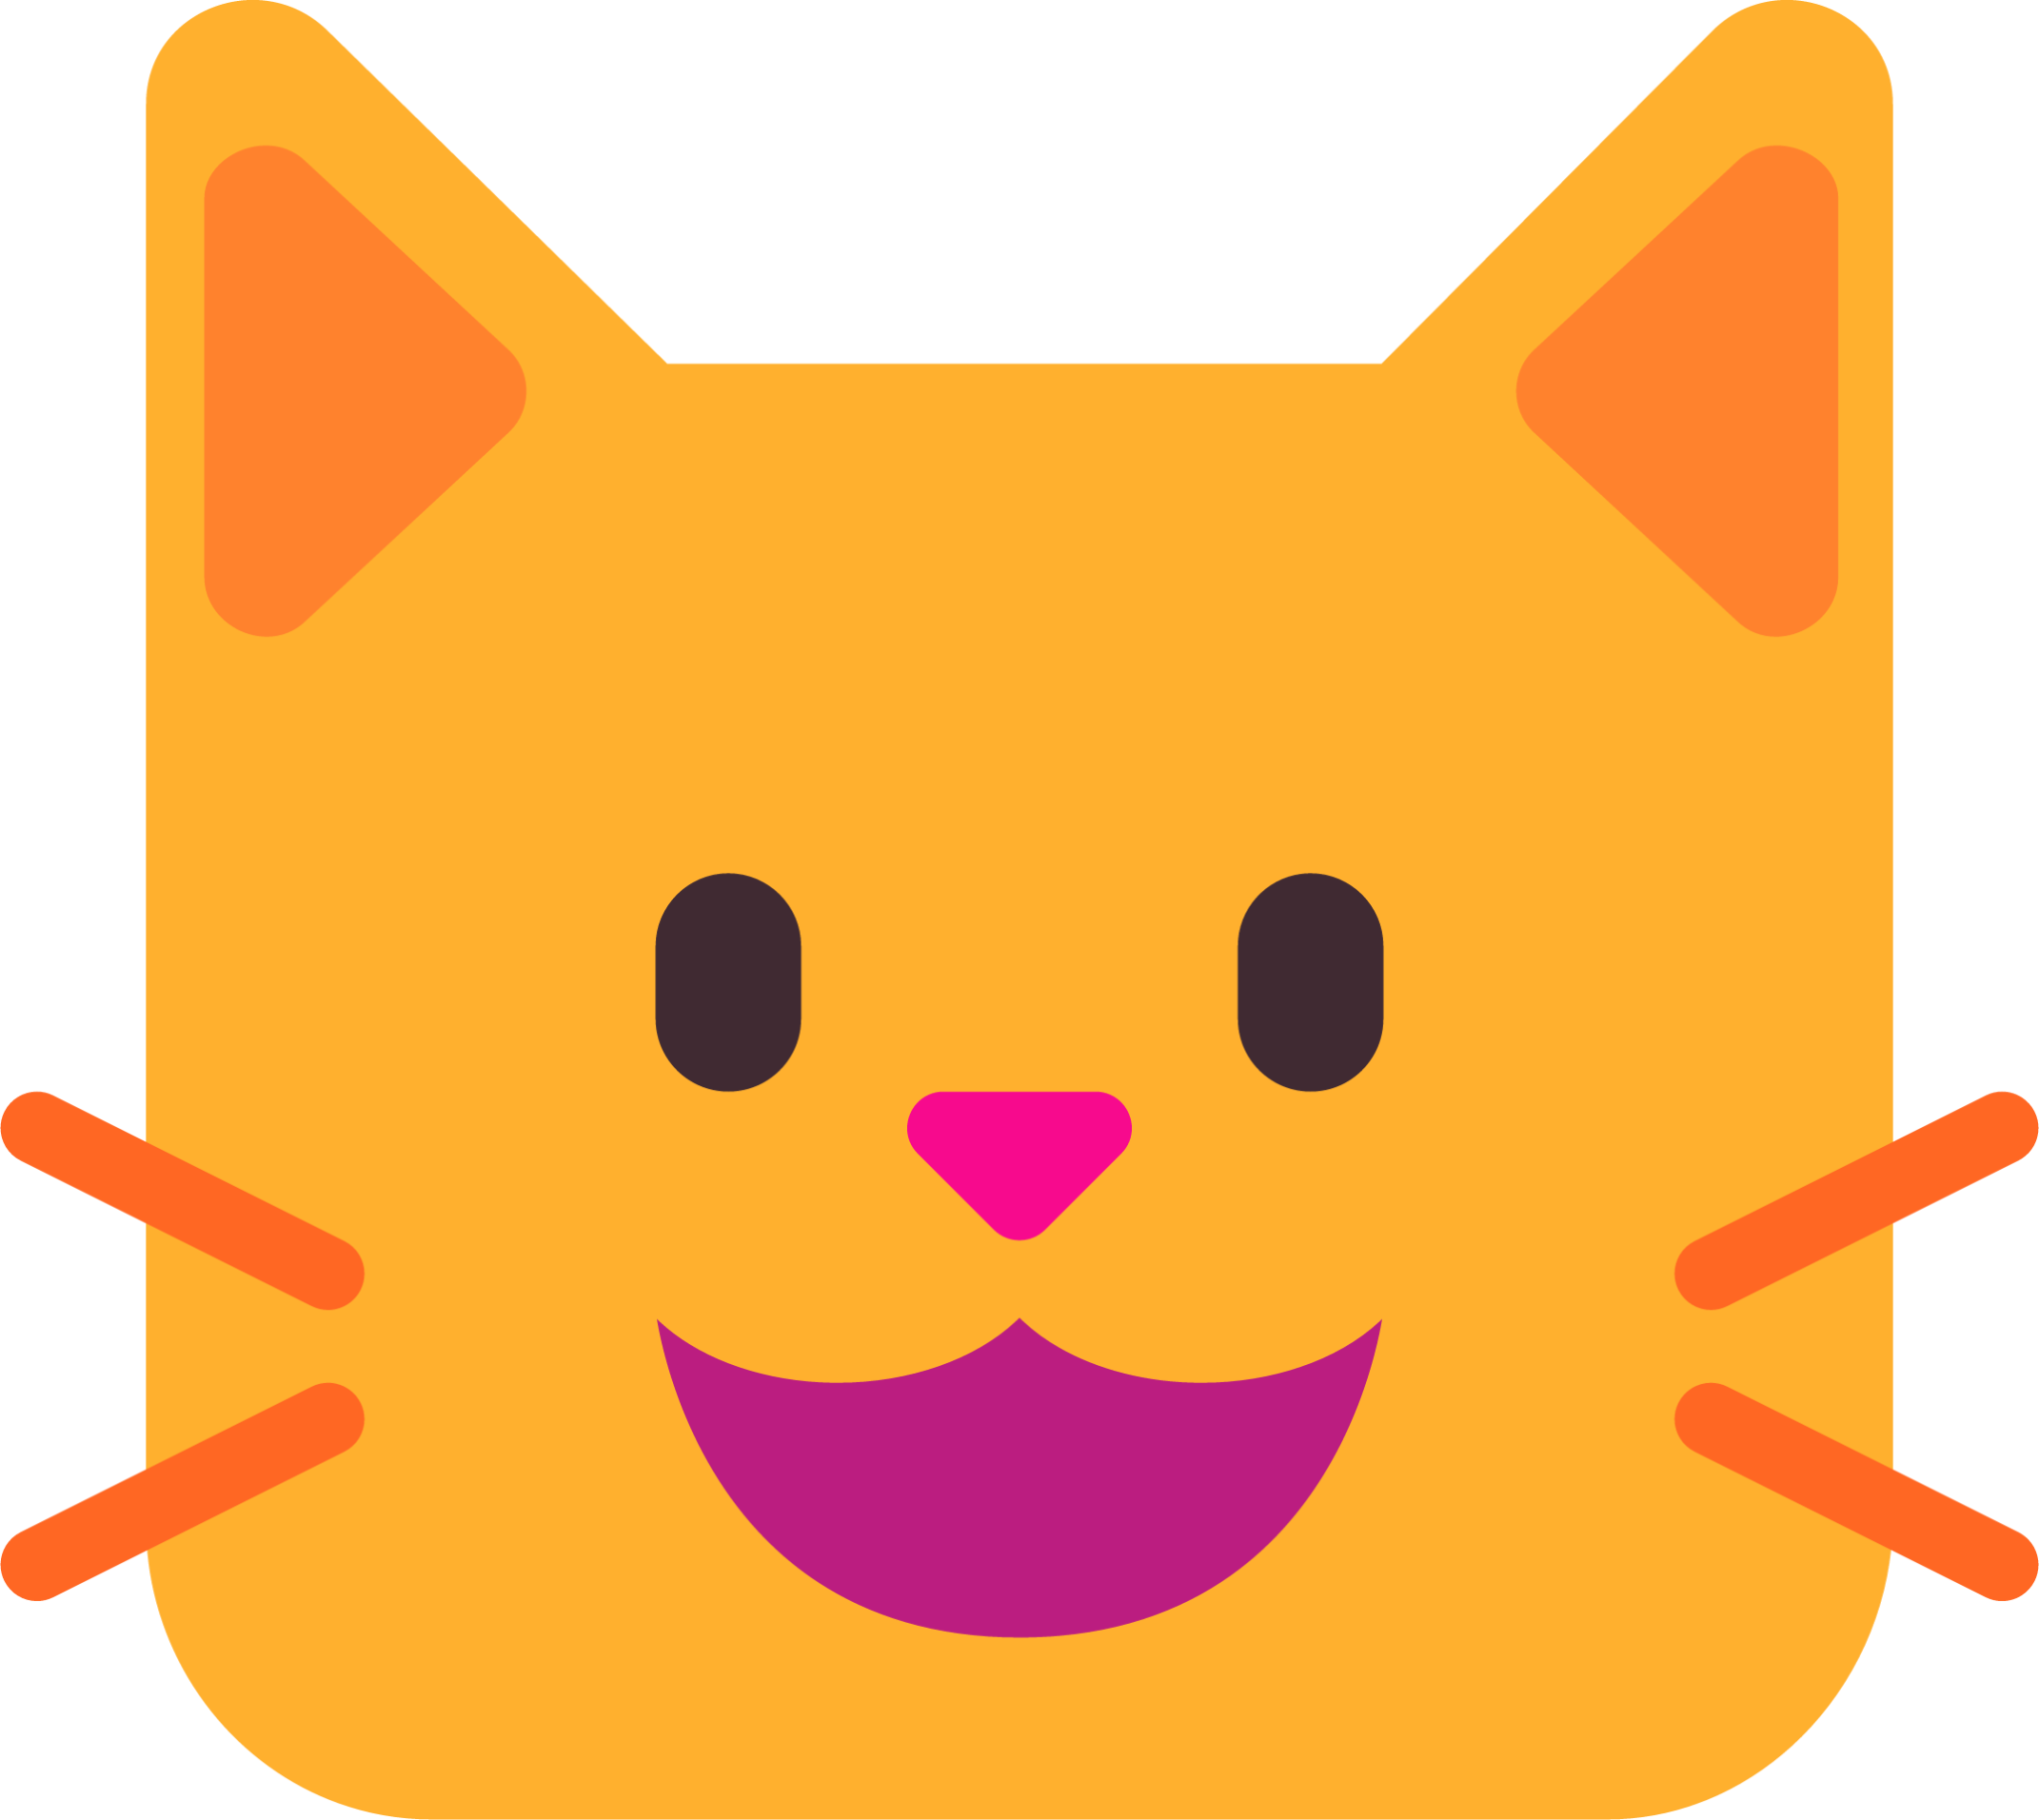 cat-face-emoji-2048x1828-k1okgit0.png